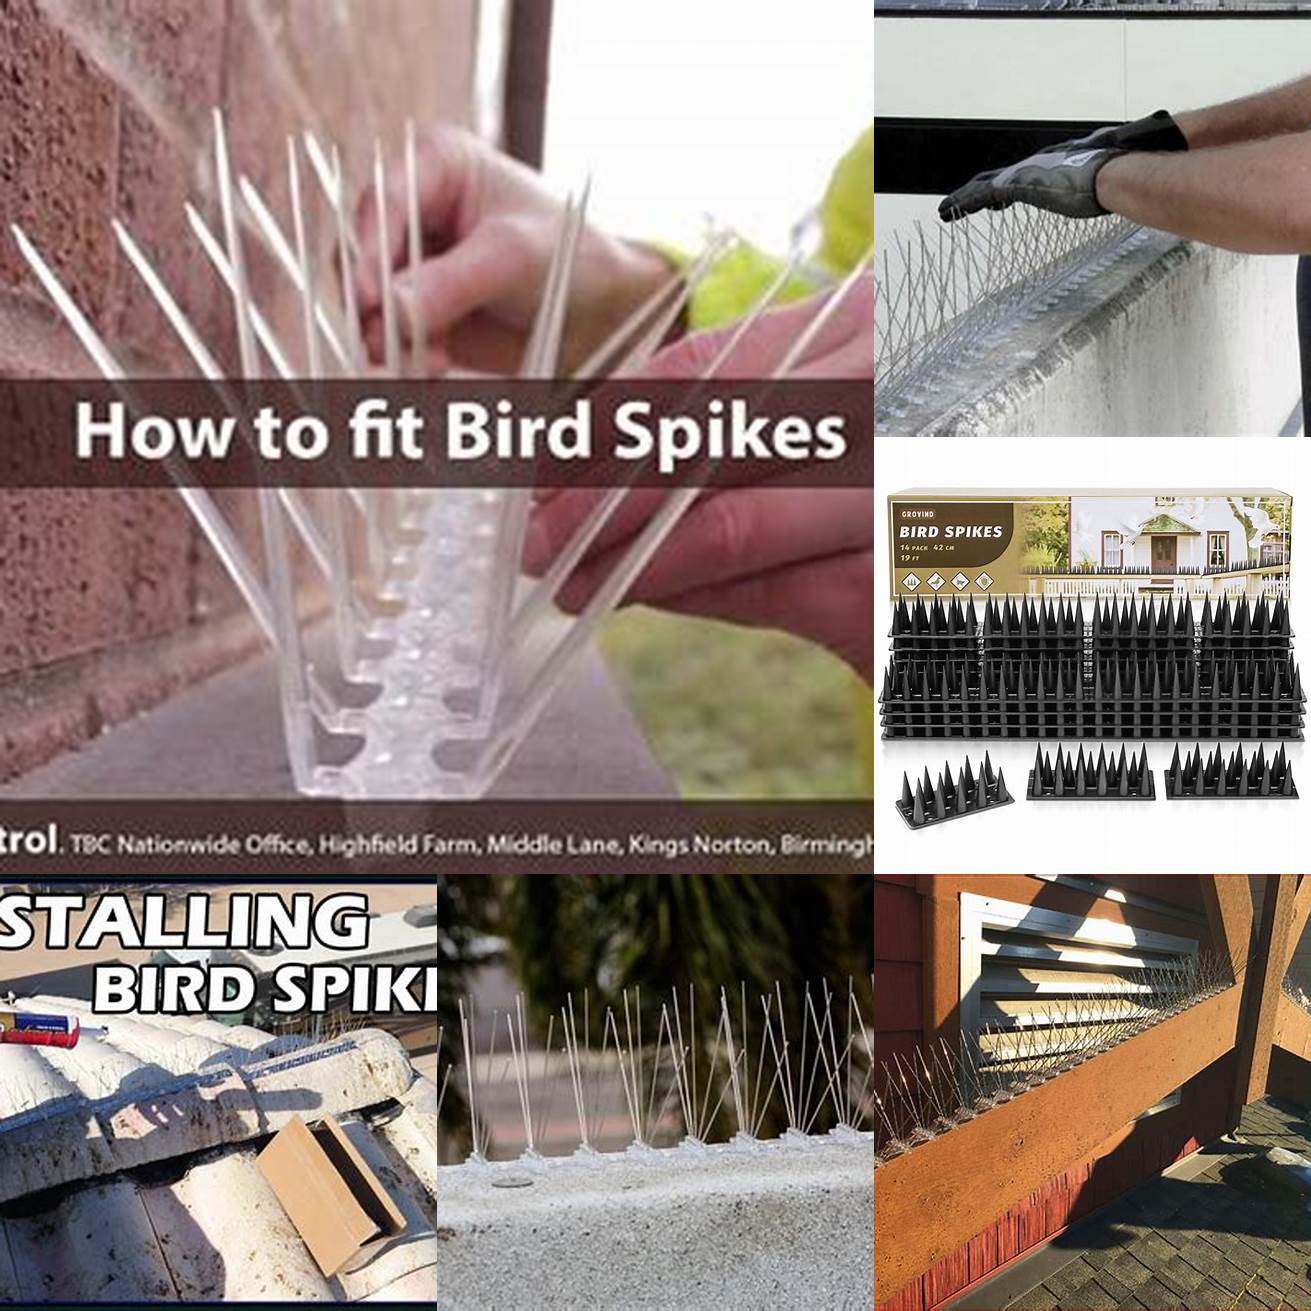 Install Bird Spikes